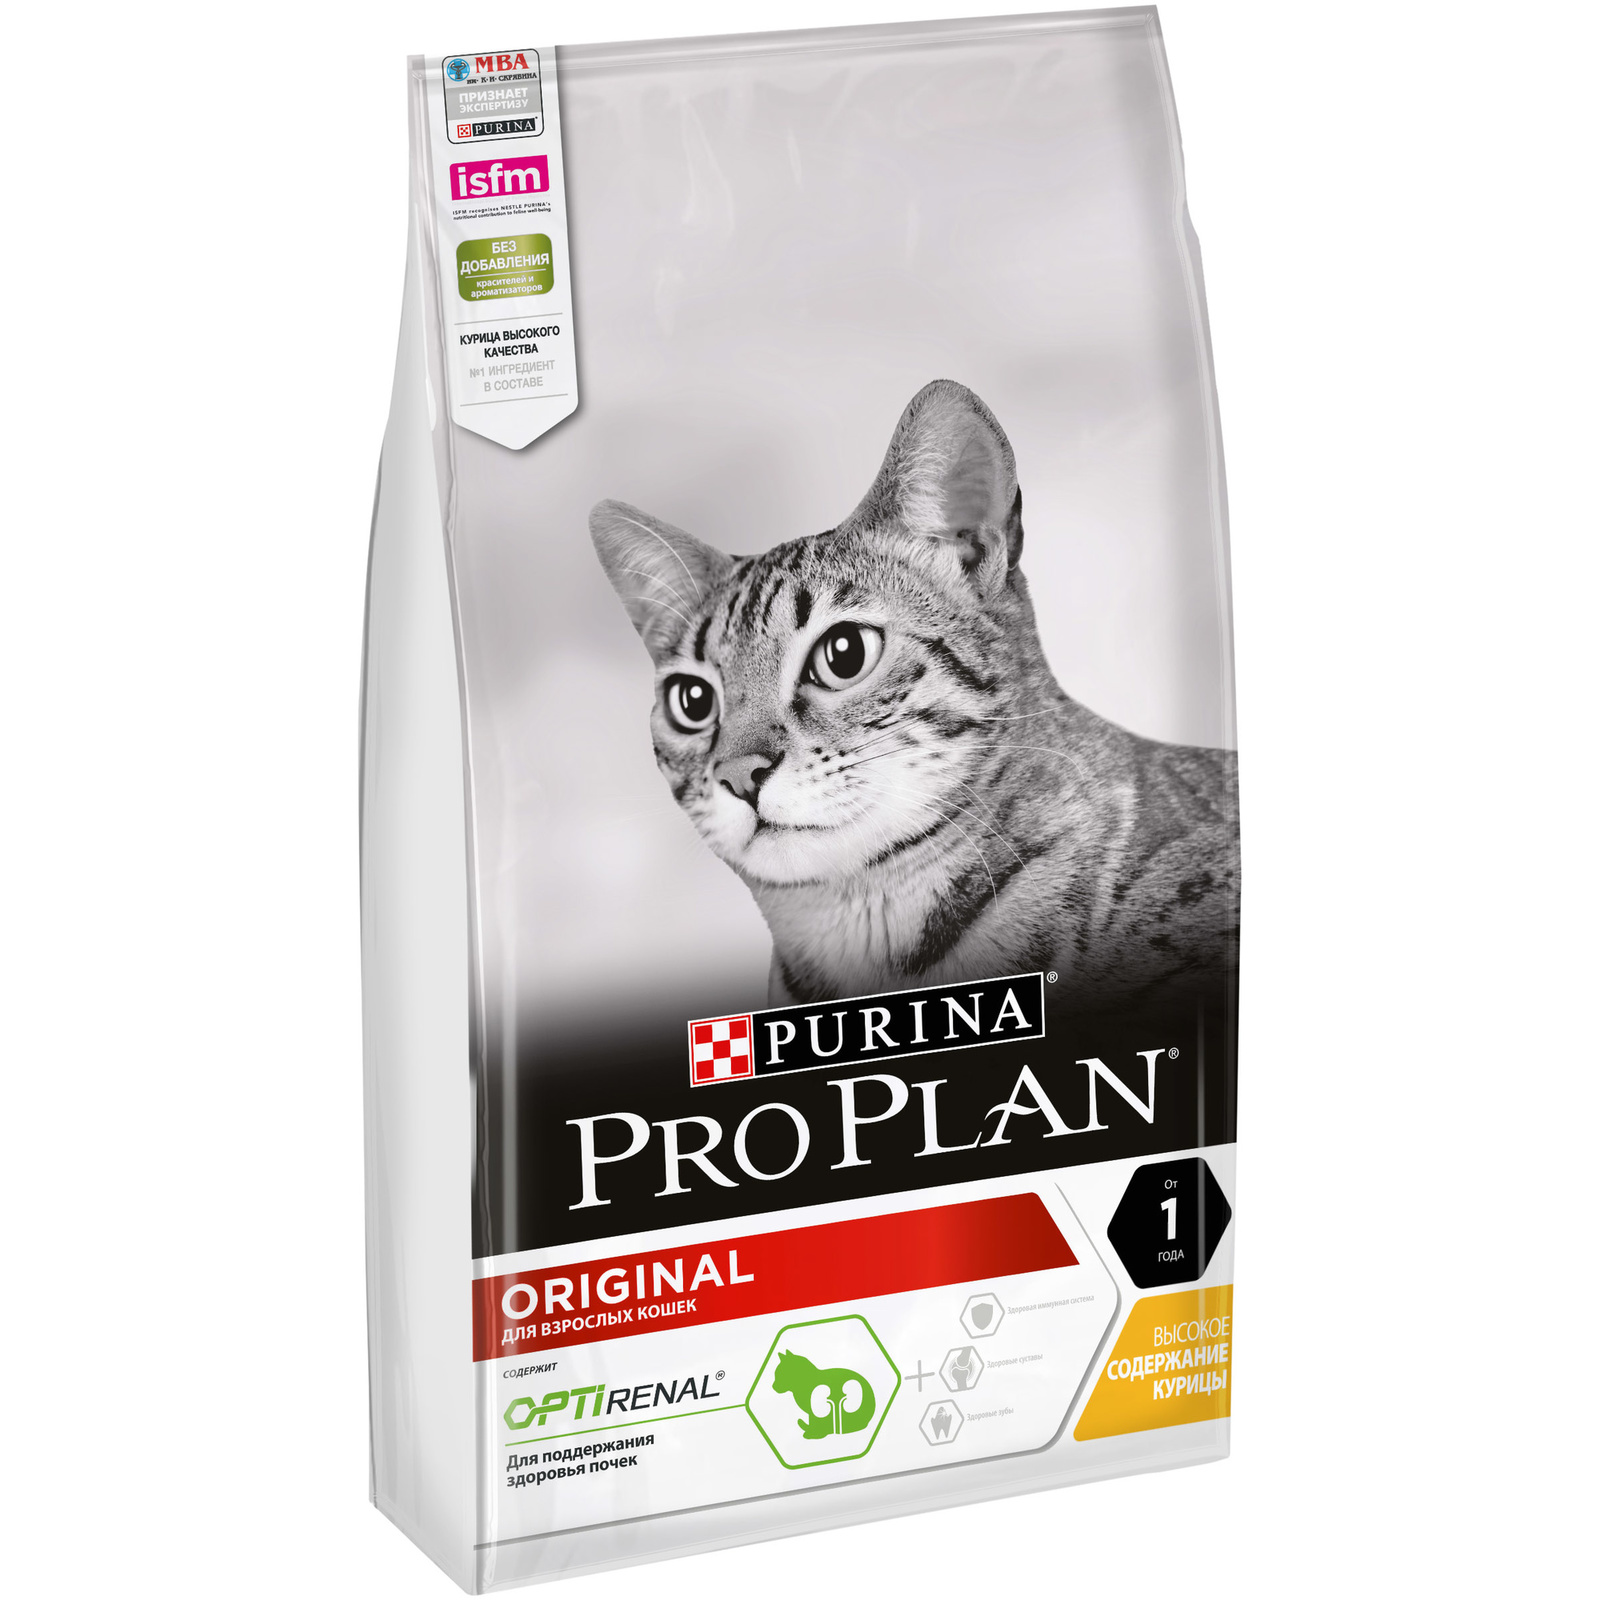 Для взрослых кошек, с курицей и рисом (3 кг) Purina Pro Plan Для взрослых кошек, с курицей и рисом (3 кг) - фото 1